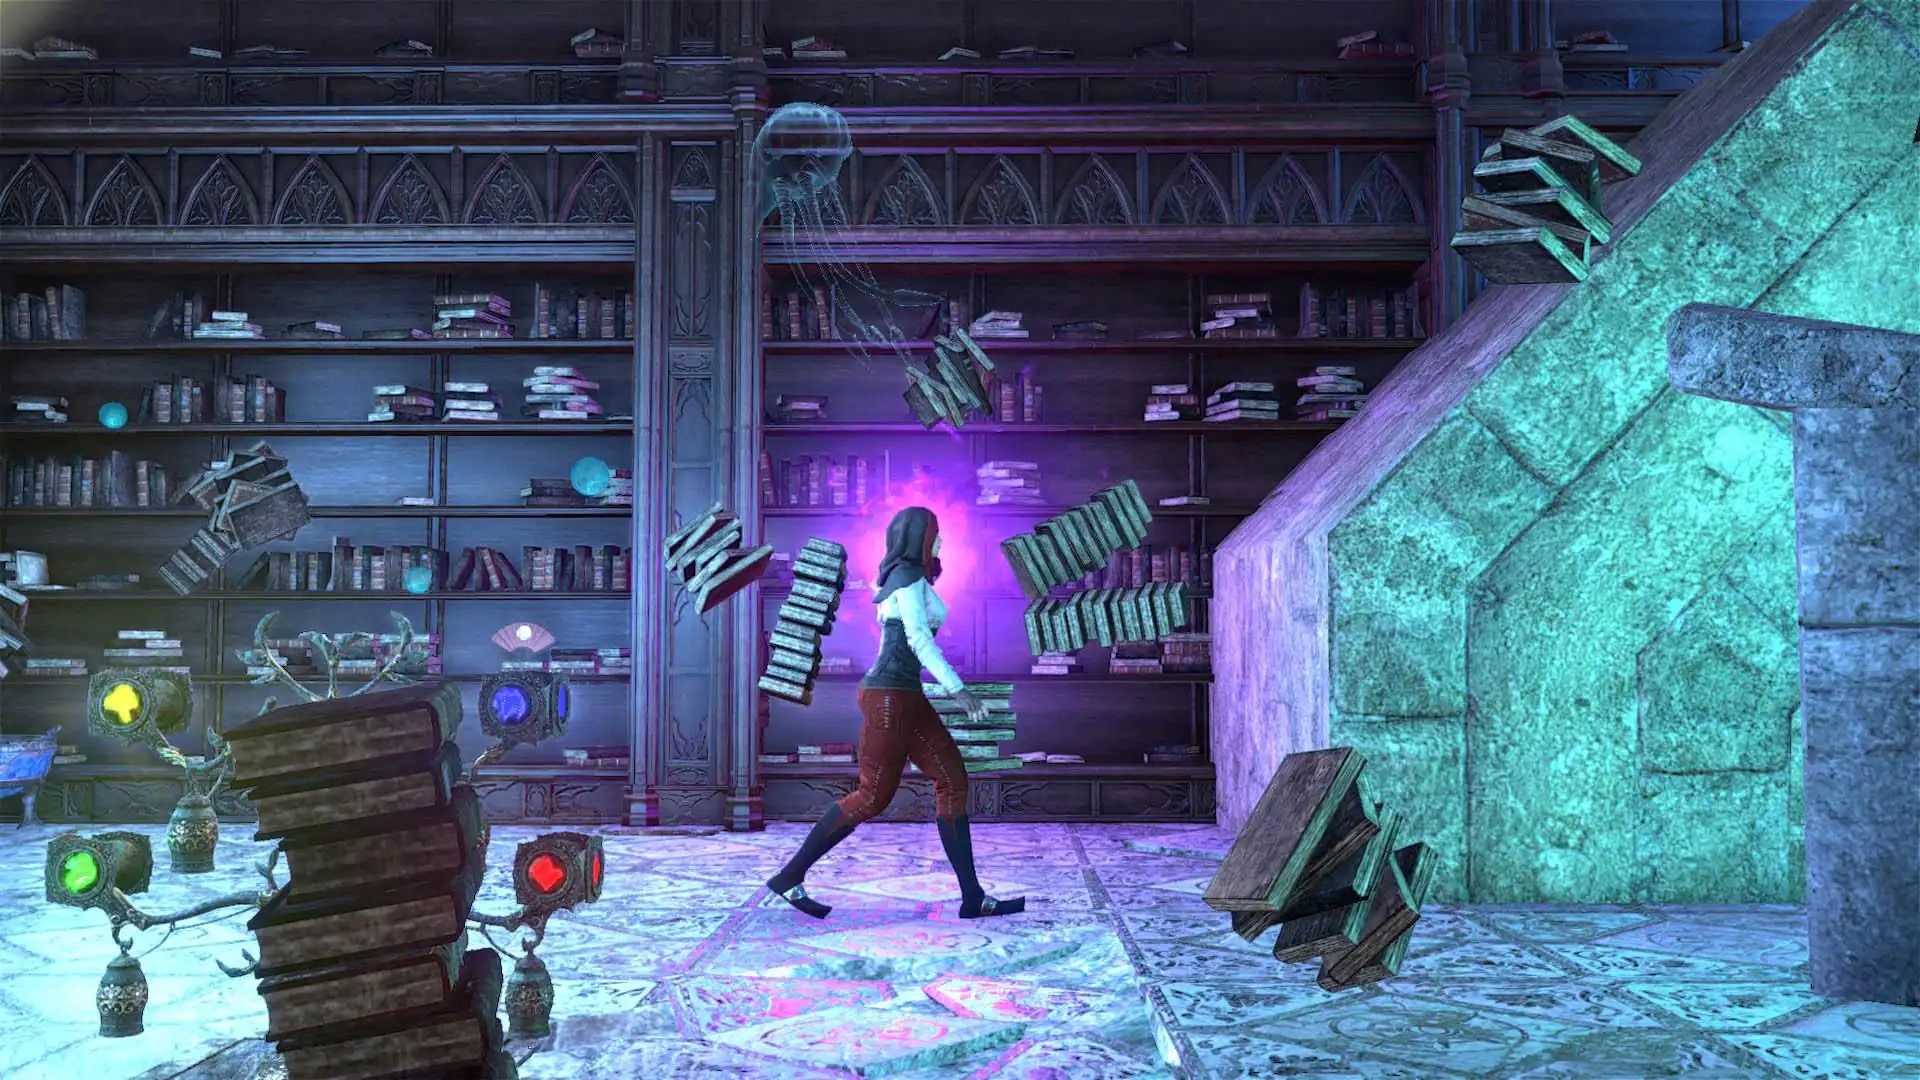 Дом в The Elder Scrolls Online в стиле Prince of Persia. Источник: thegamer.com